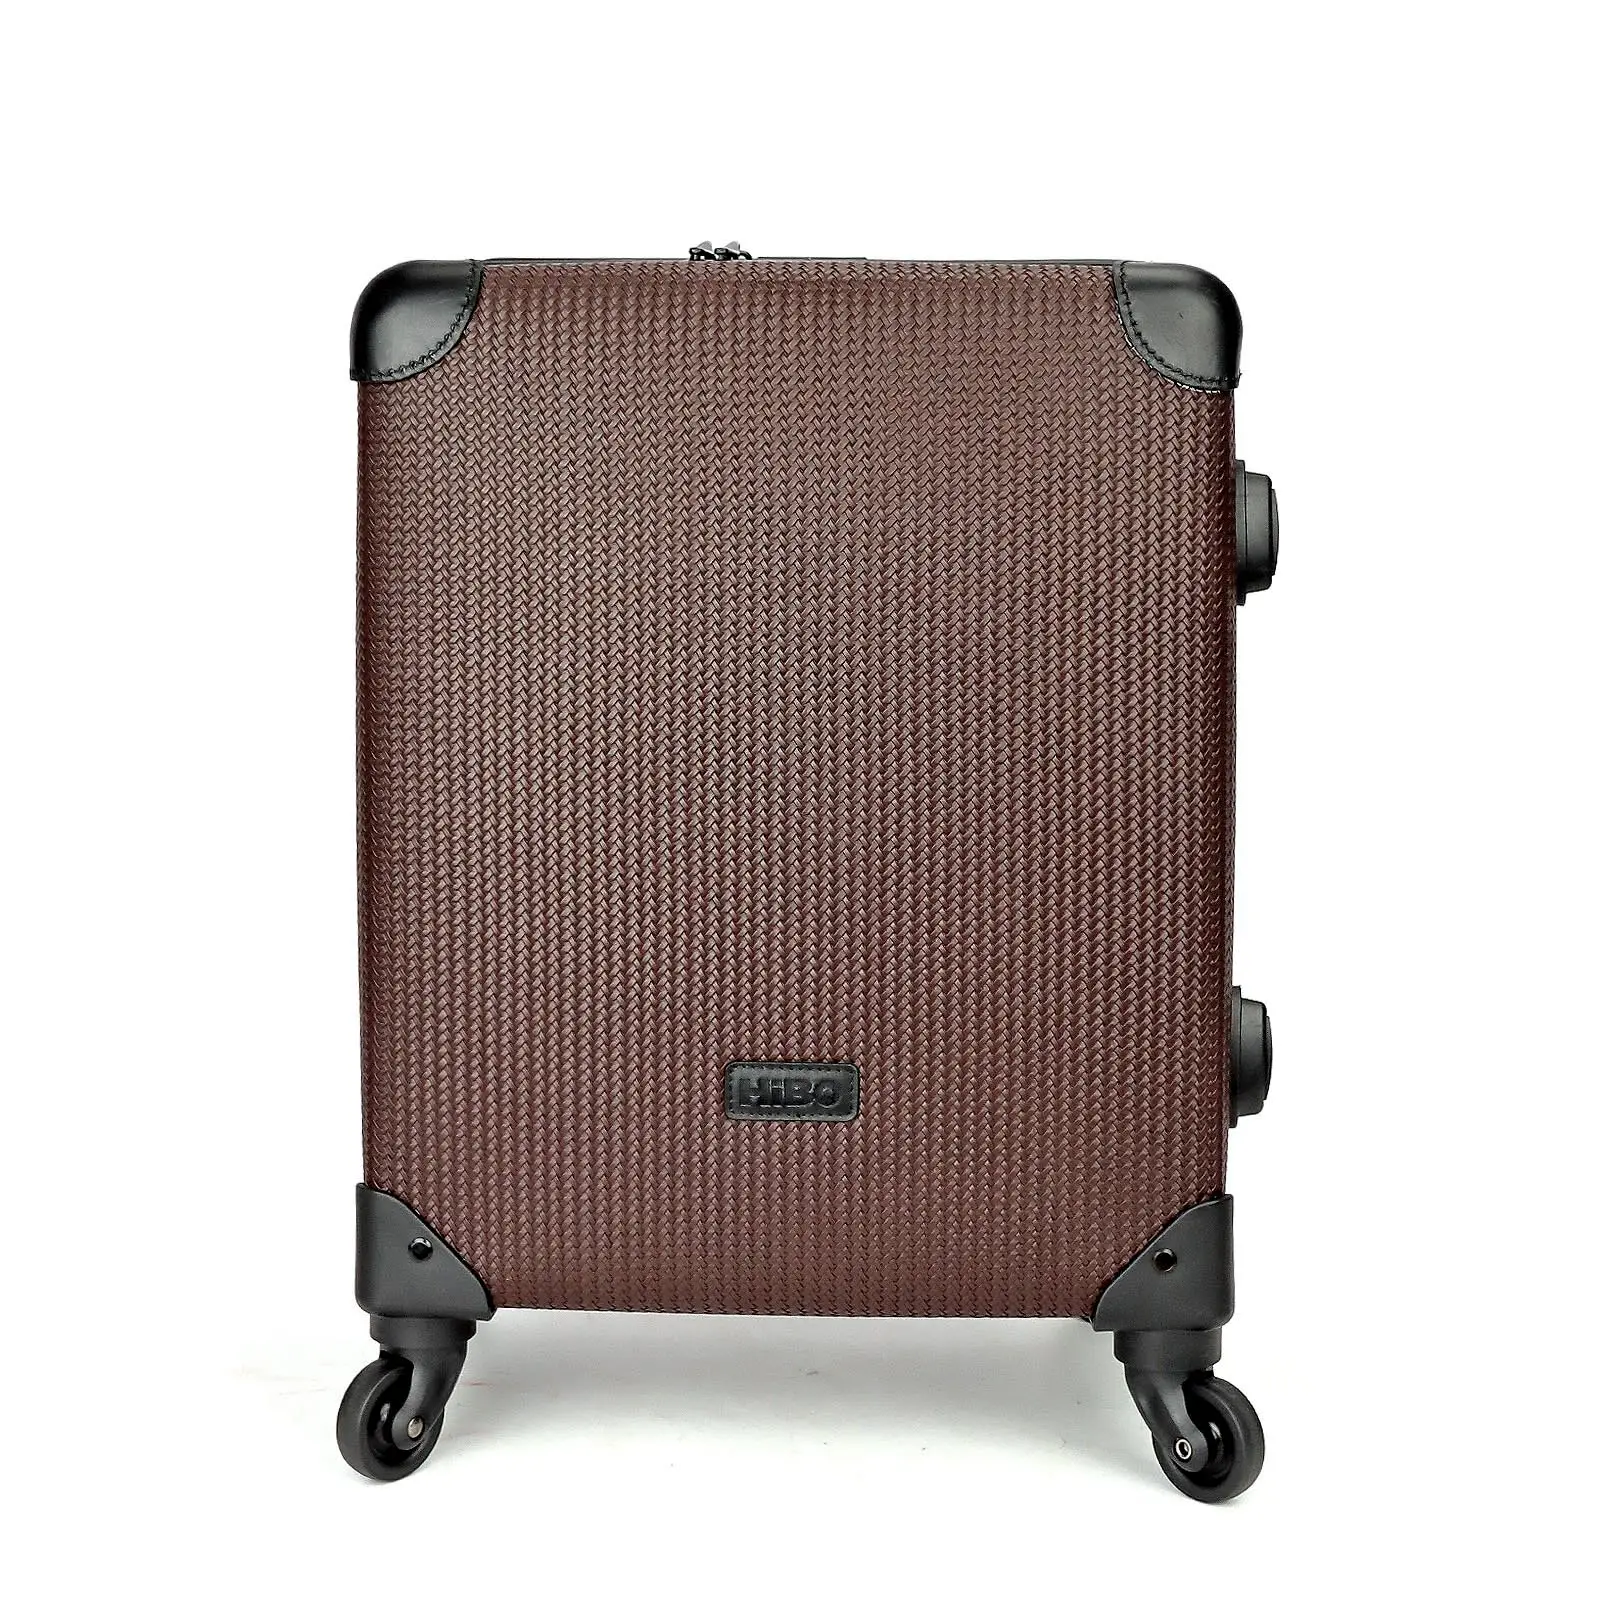 Kustom kualitas tinggi koper bagasi penjualan laris koper perjalanan modis koper barang bawaan luar ruangan untuk bisnis